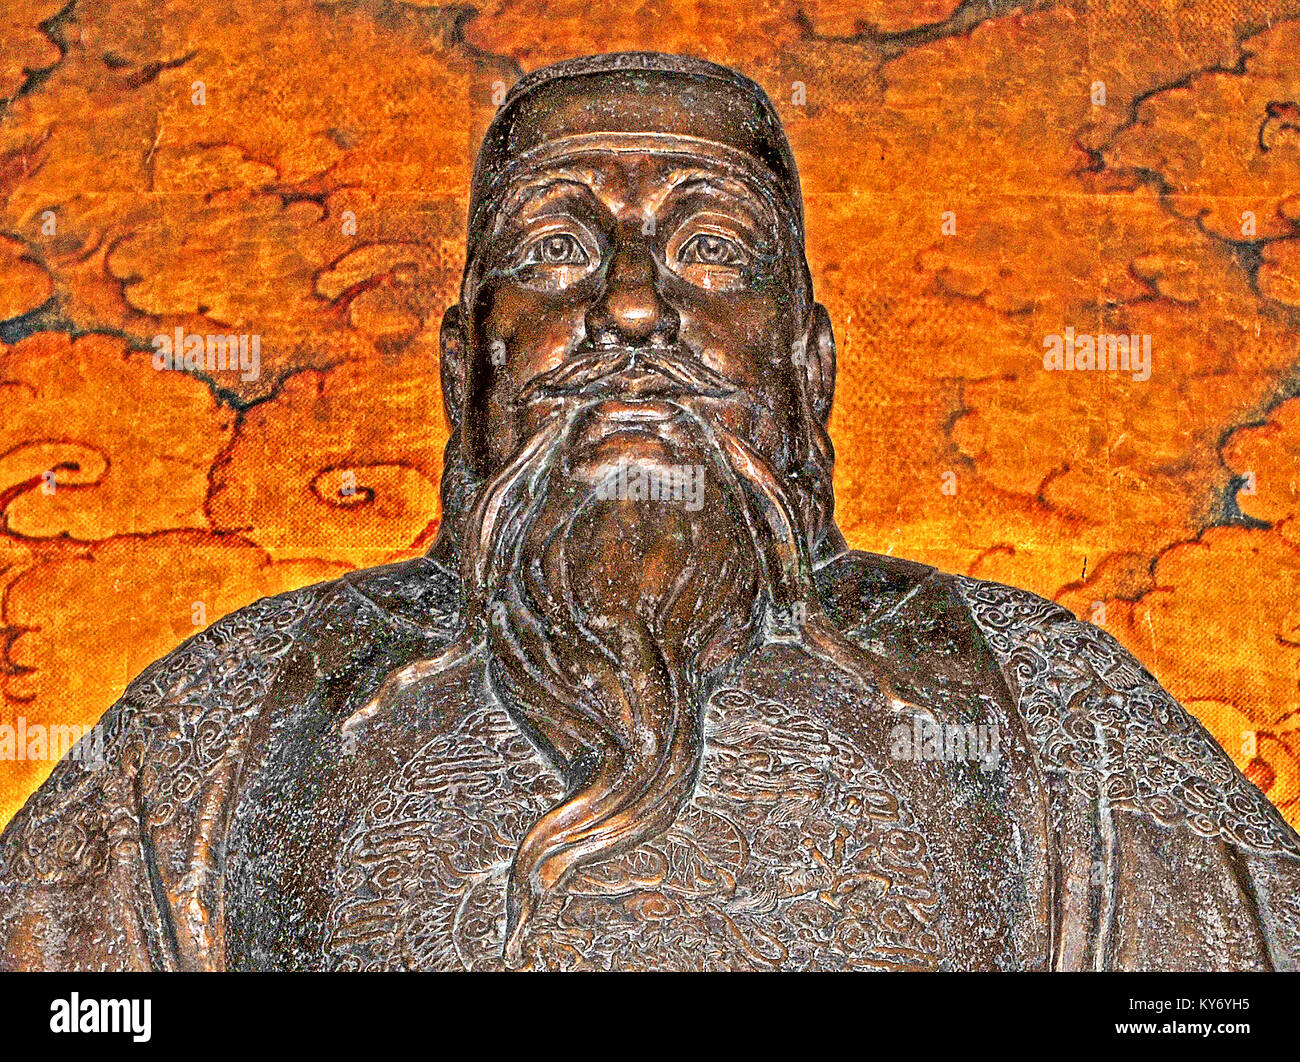 Statue de l'empereur Ming Yongle, Zhu Di, Tombeaux des Ming, mausolée Changling, Chine Banque D'Images